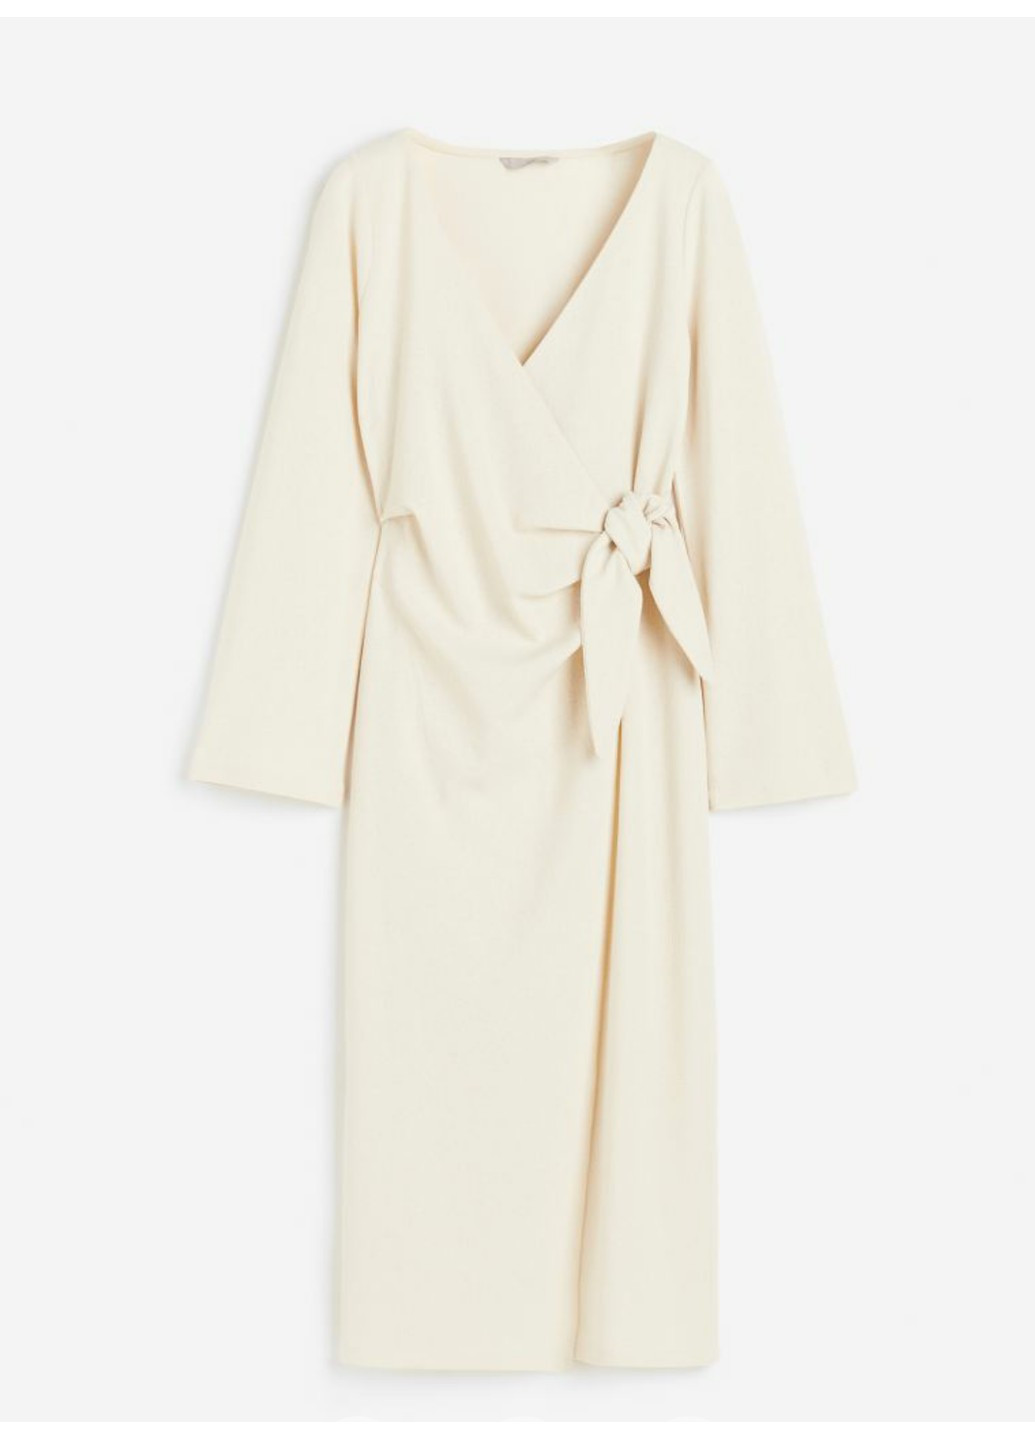 Світло-бежева коктейльна жіноча трикотажна сукня н&м (56482) s світло-бежева H&M